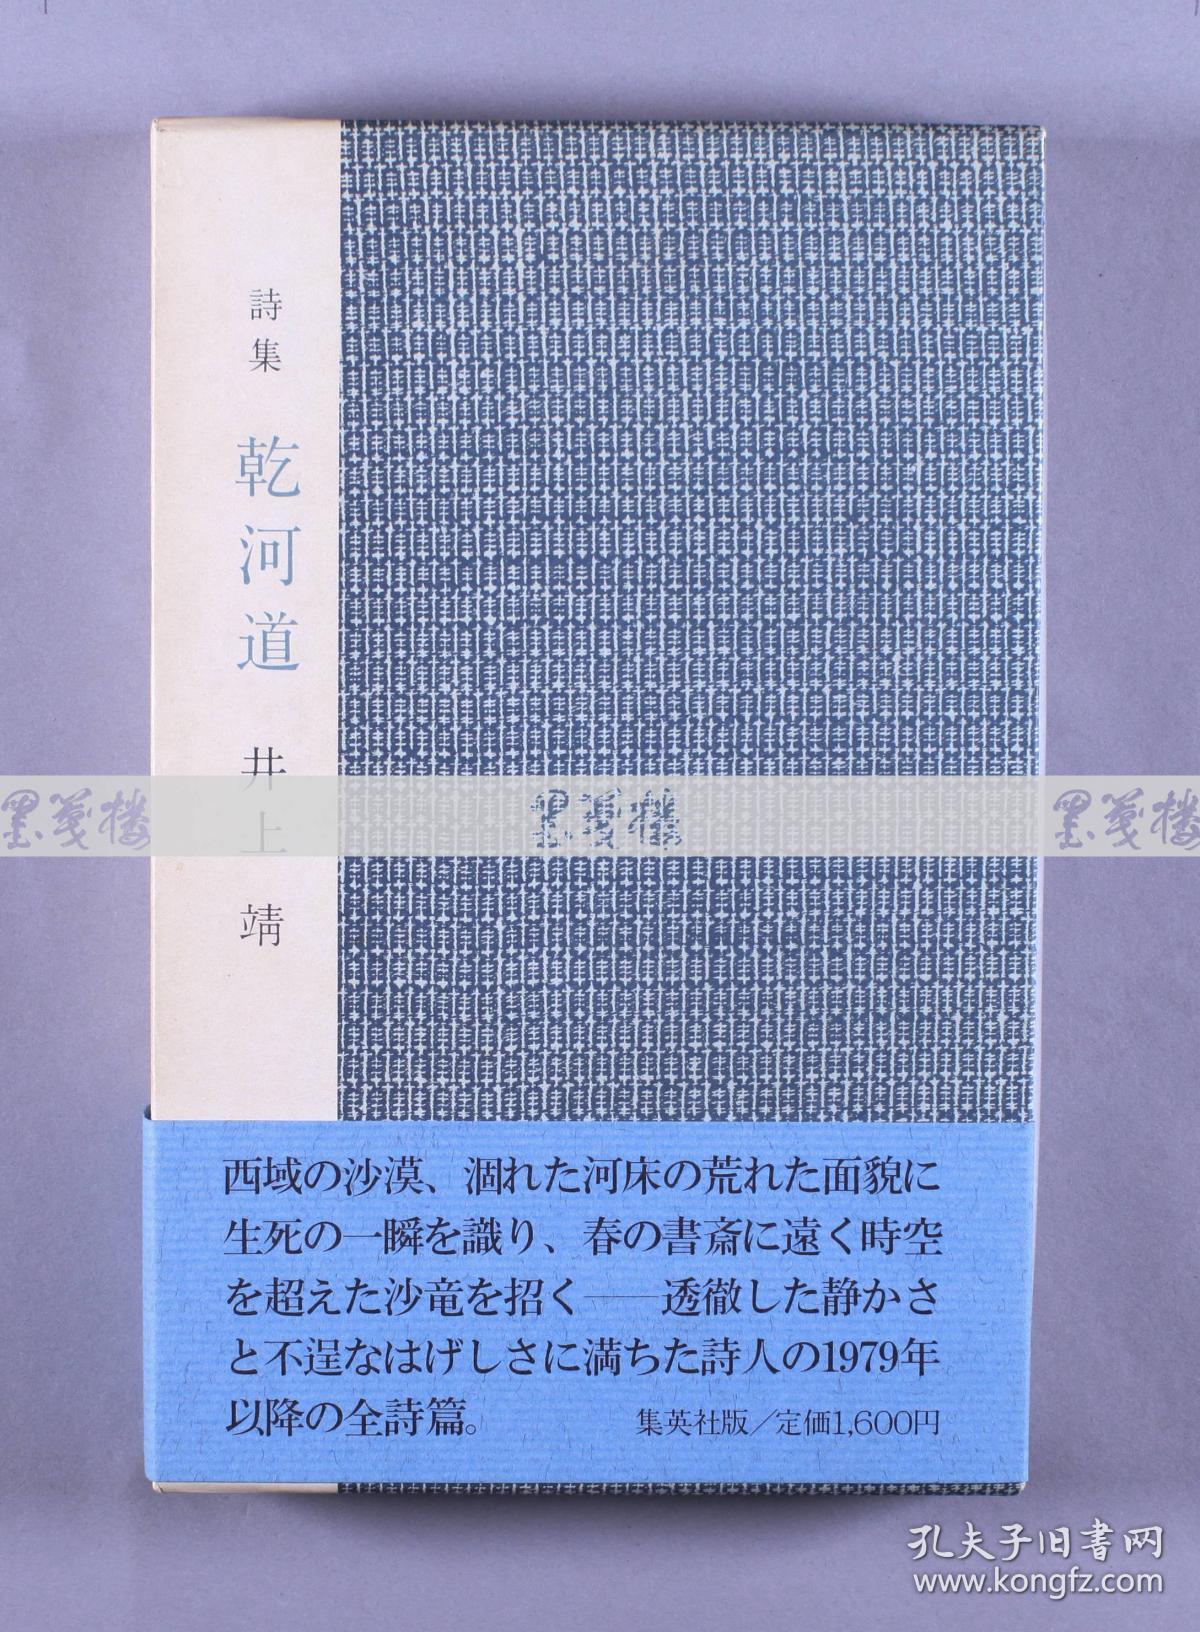 日本著名诗人、作家、社会活动家 井上靖签名本《乾河道》日文原版精装本一册 附原装函盒 HXTX116895